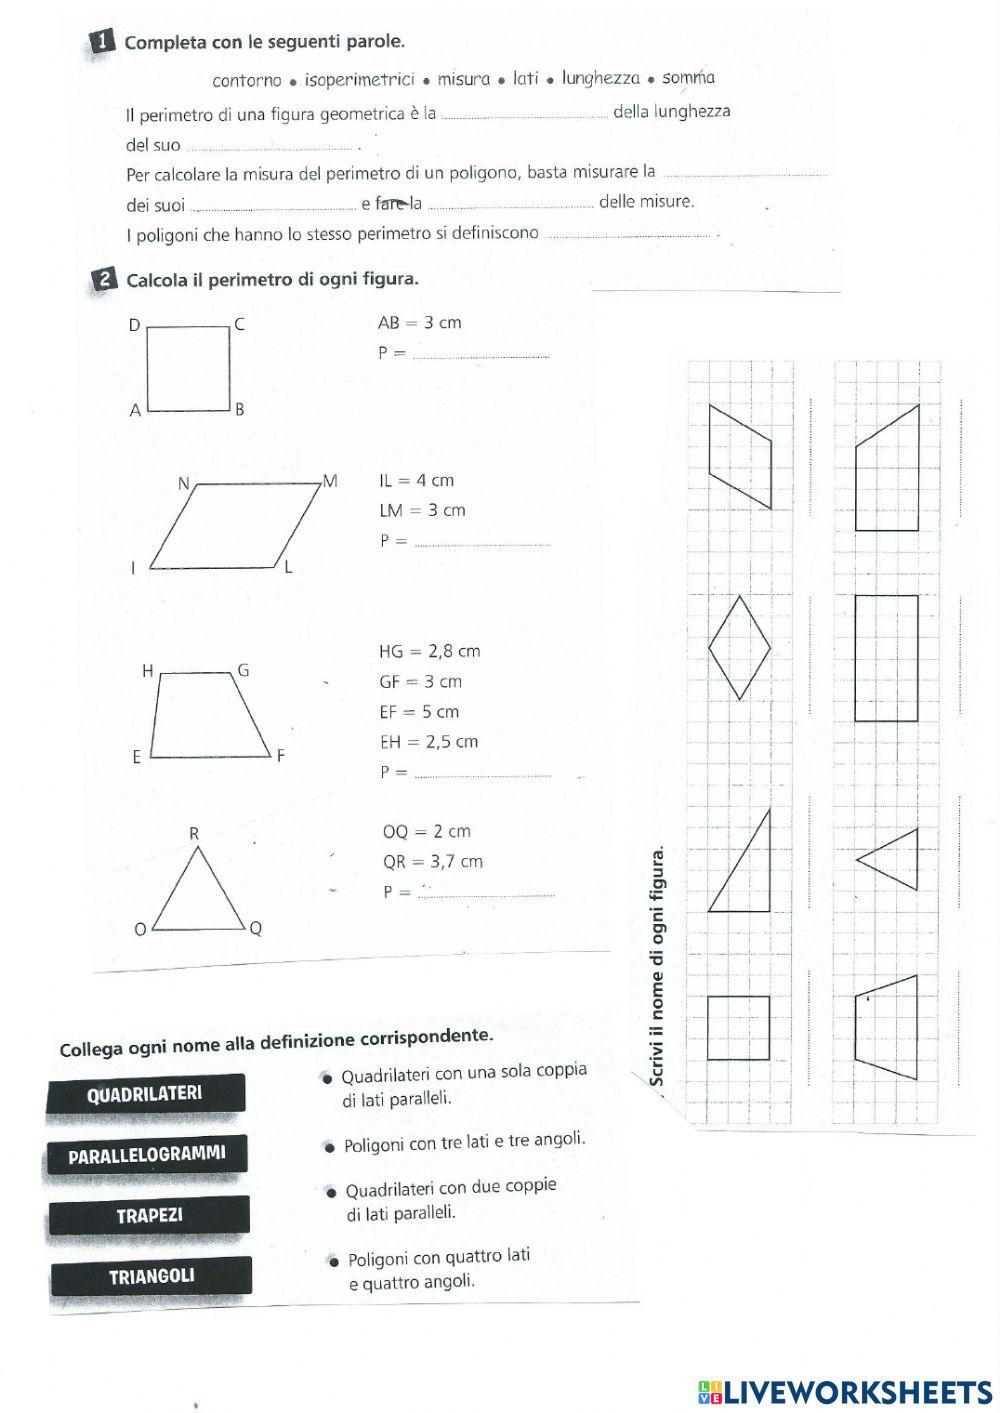 Poligoni: triangoli e quadrilateri